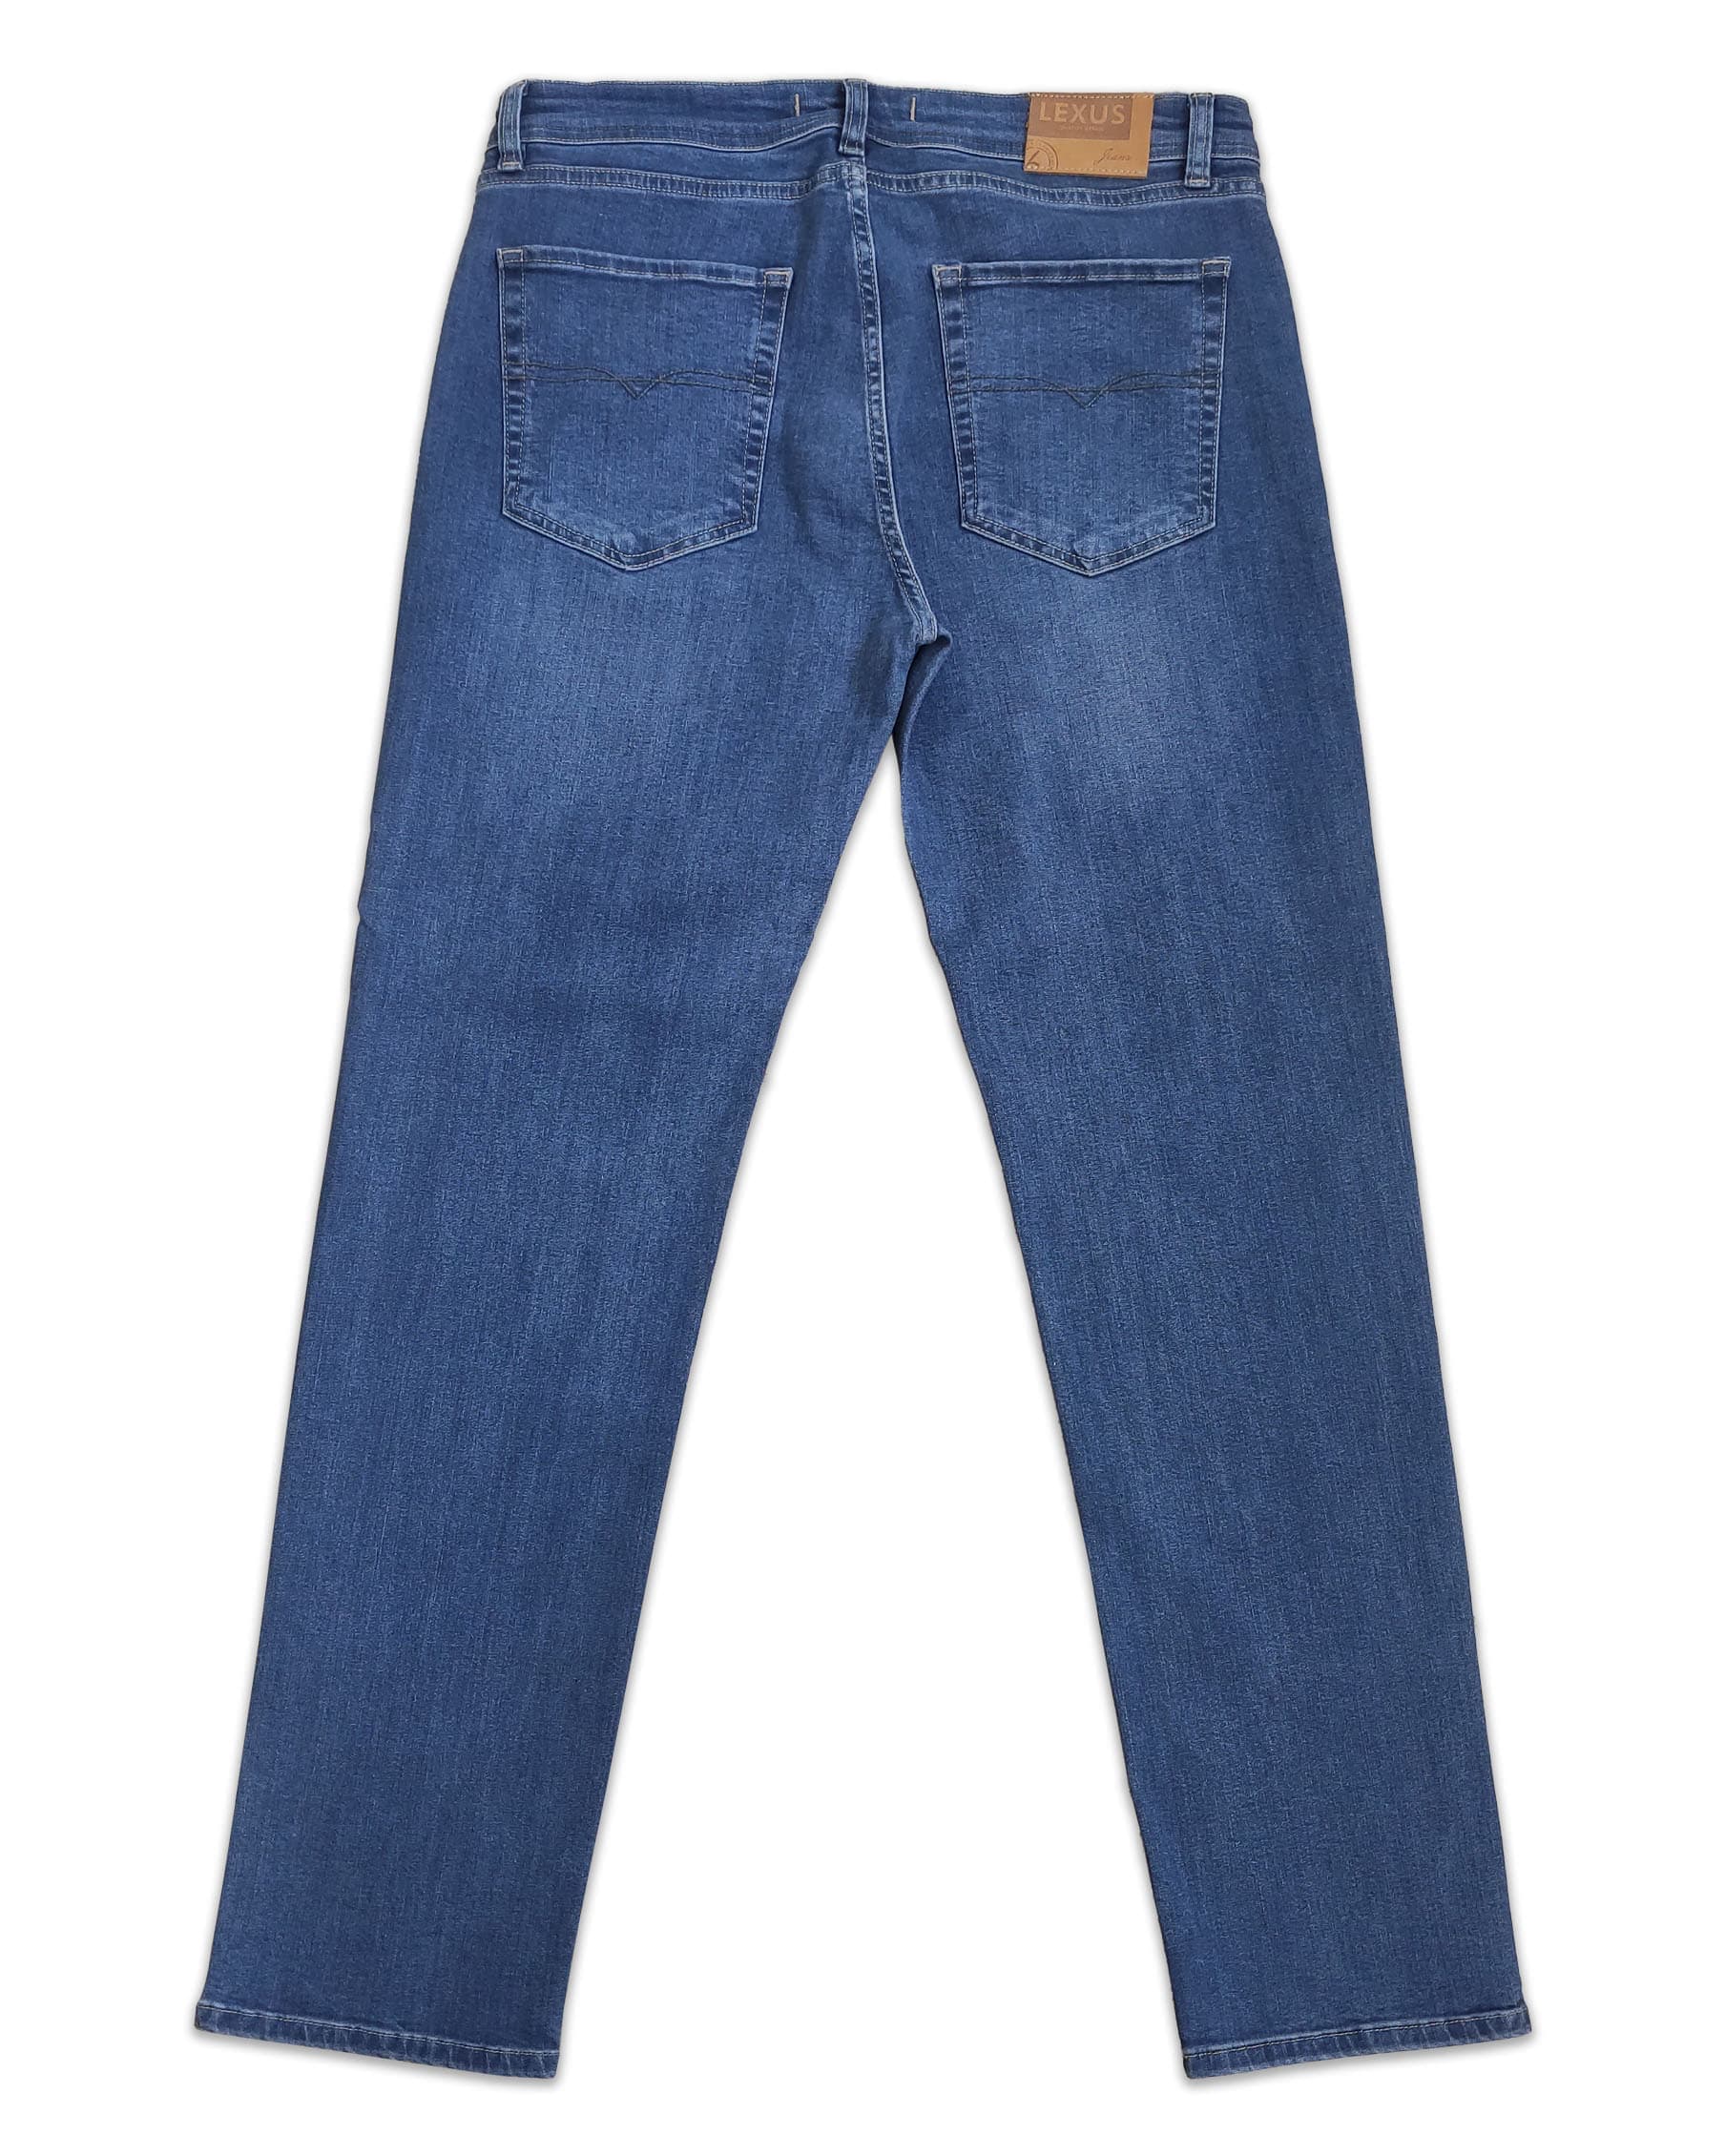 2-джинси-чоловічі-lexus-класичні-сині-5003-p-7947